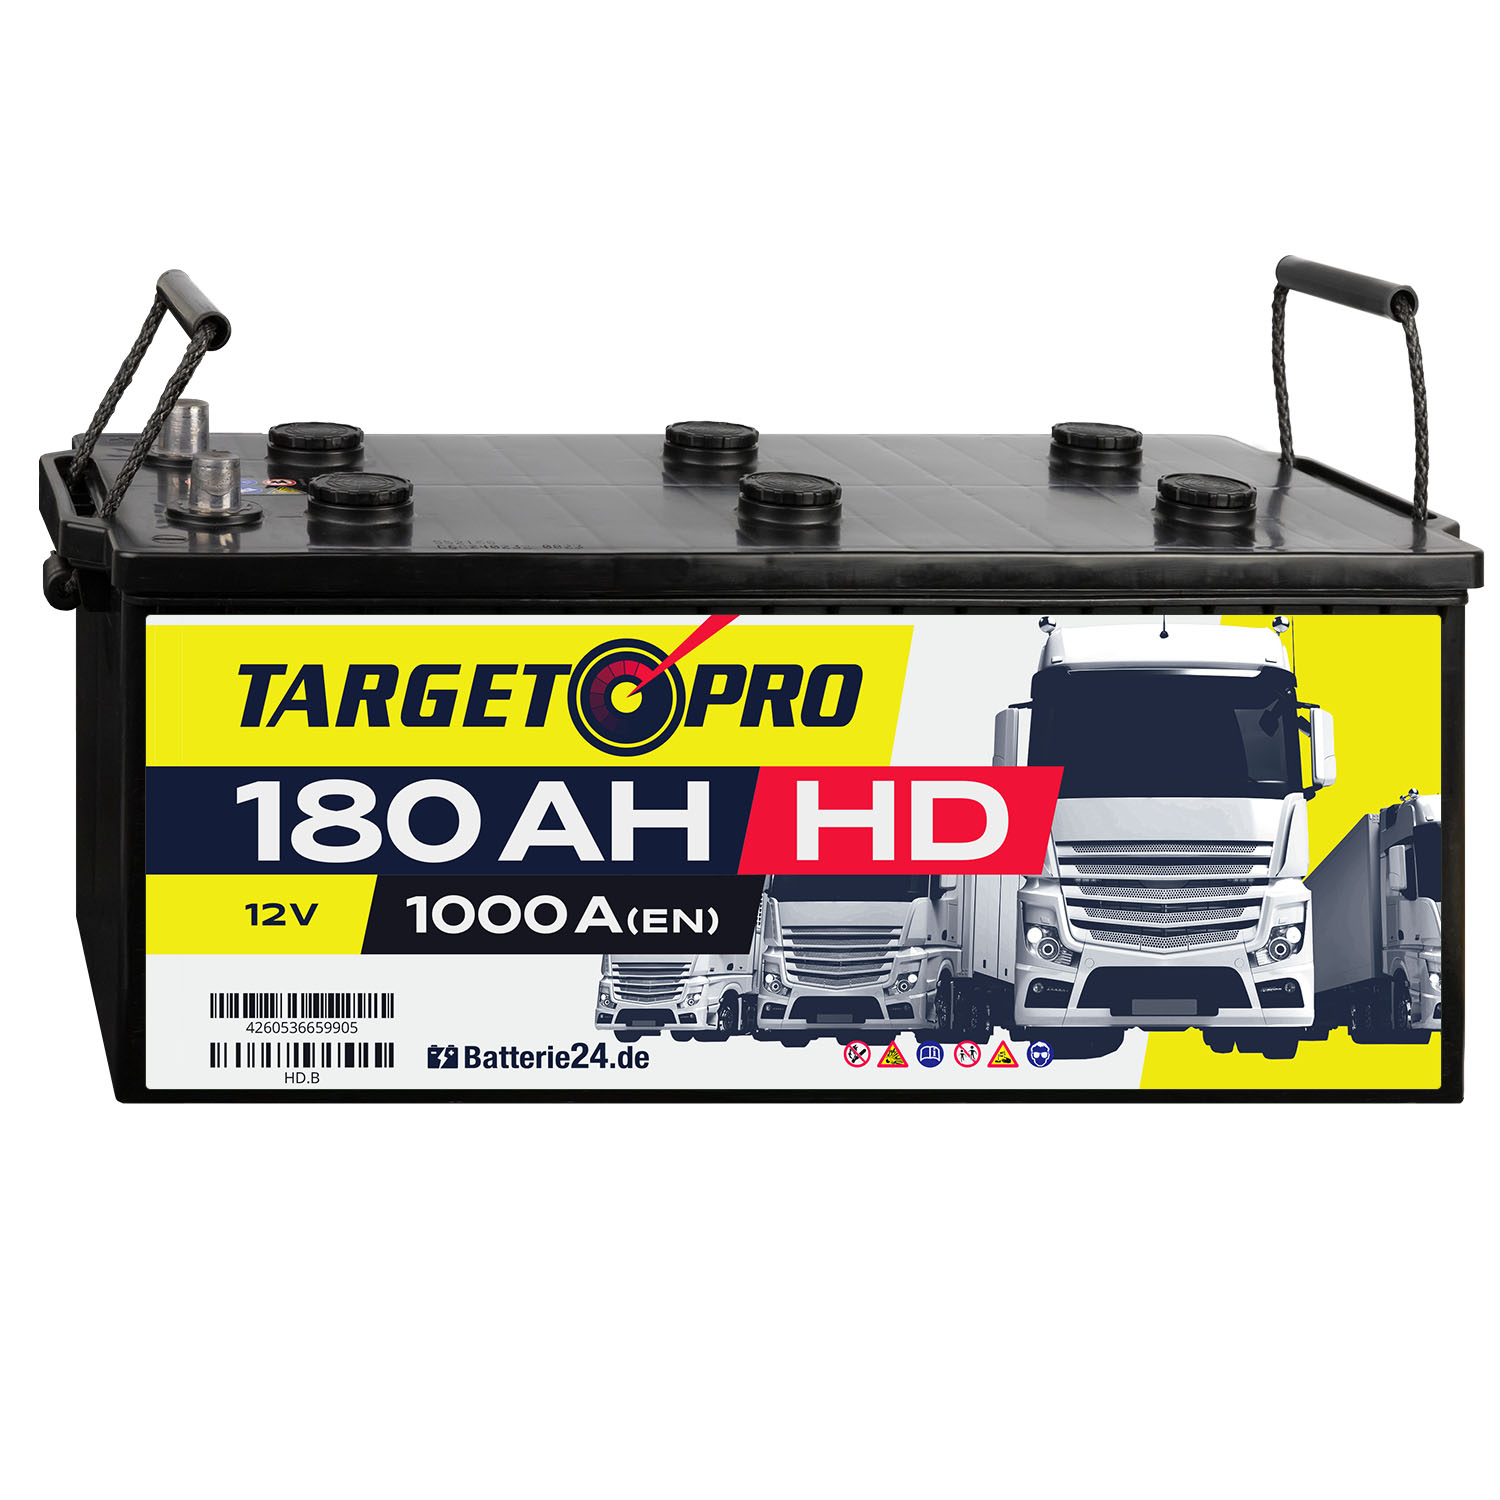 Target Pro HD 12V 180Ah LKW Batterie